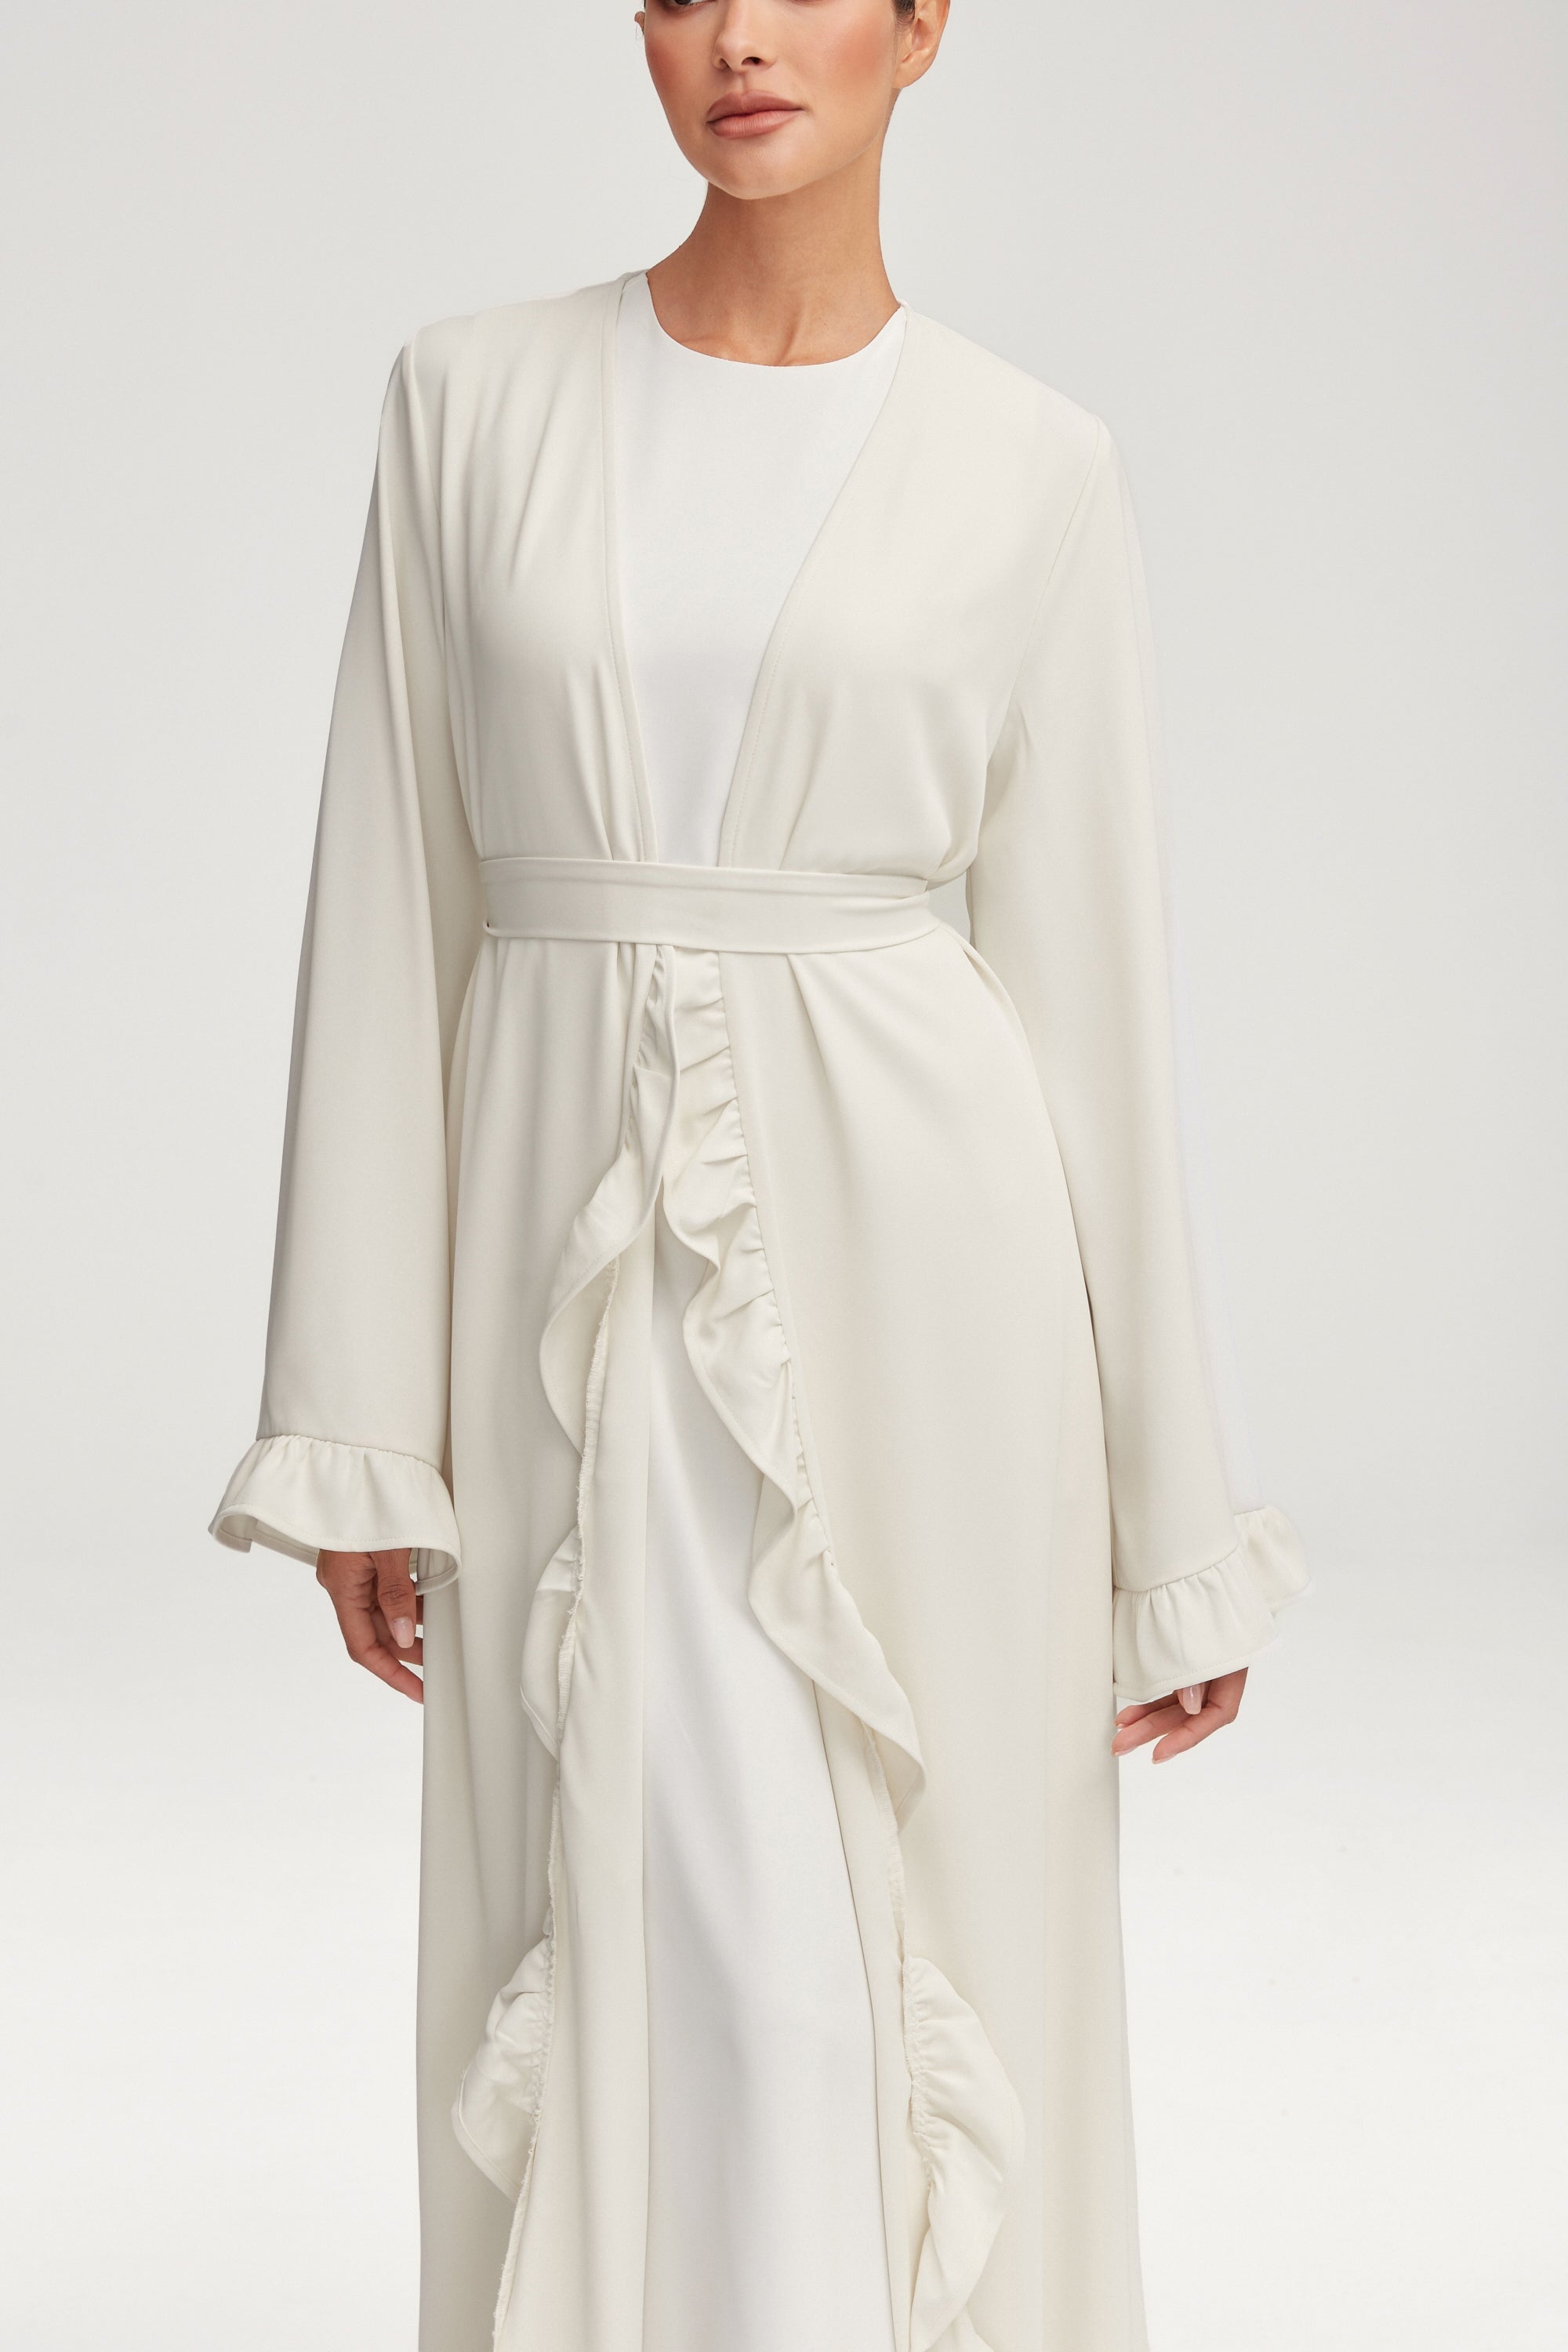 Mariam Ruffle Open Abaya - White Clothing epschoolboard 